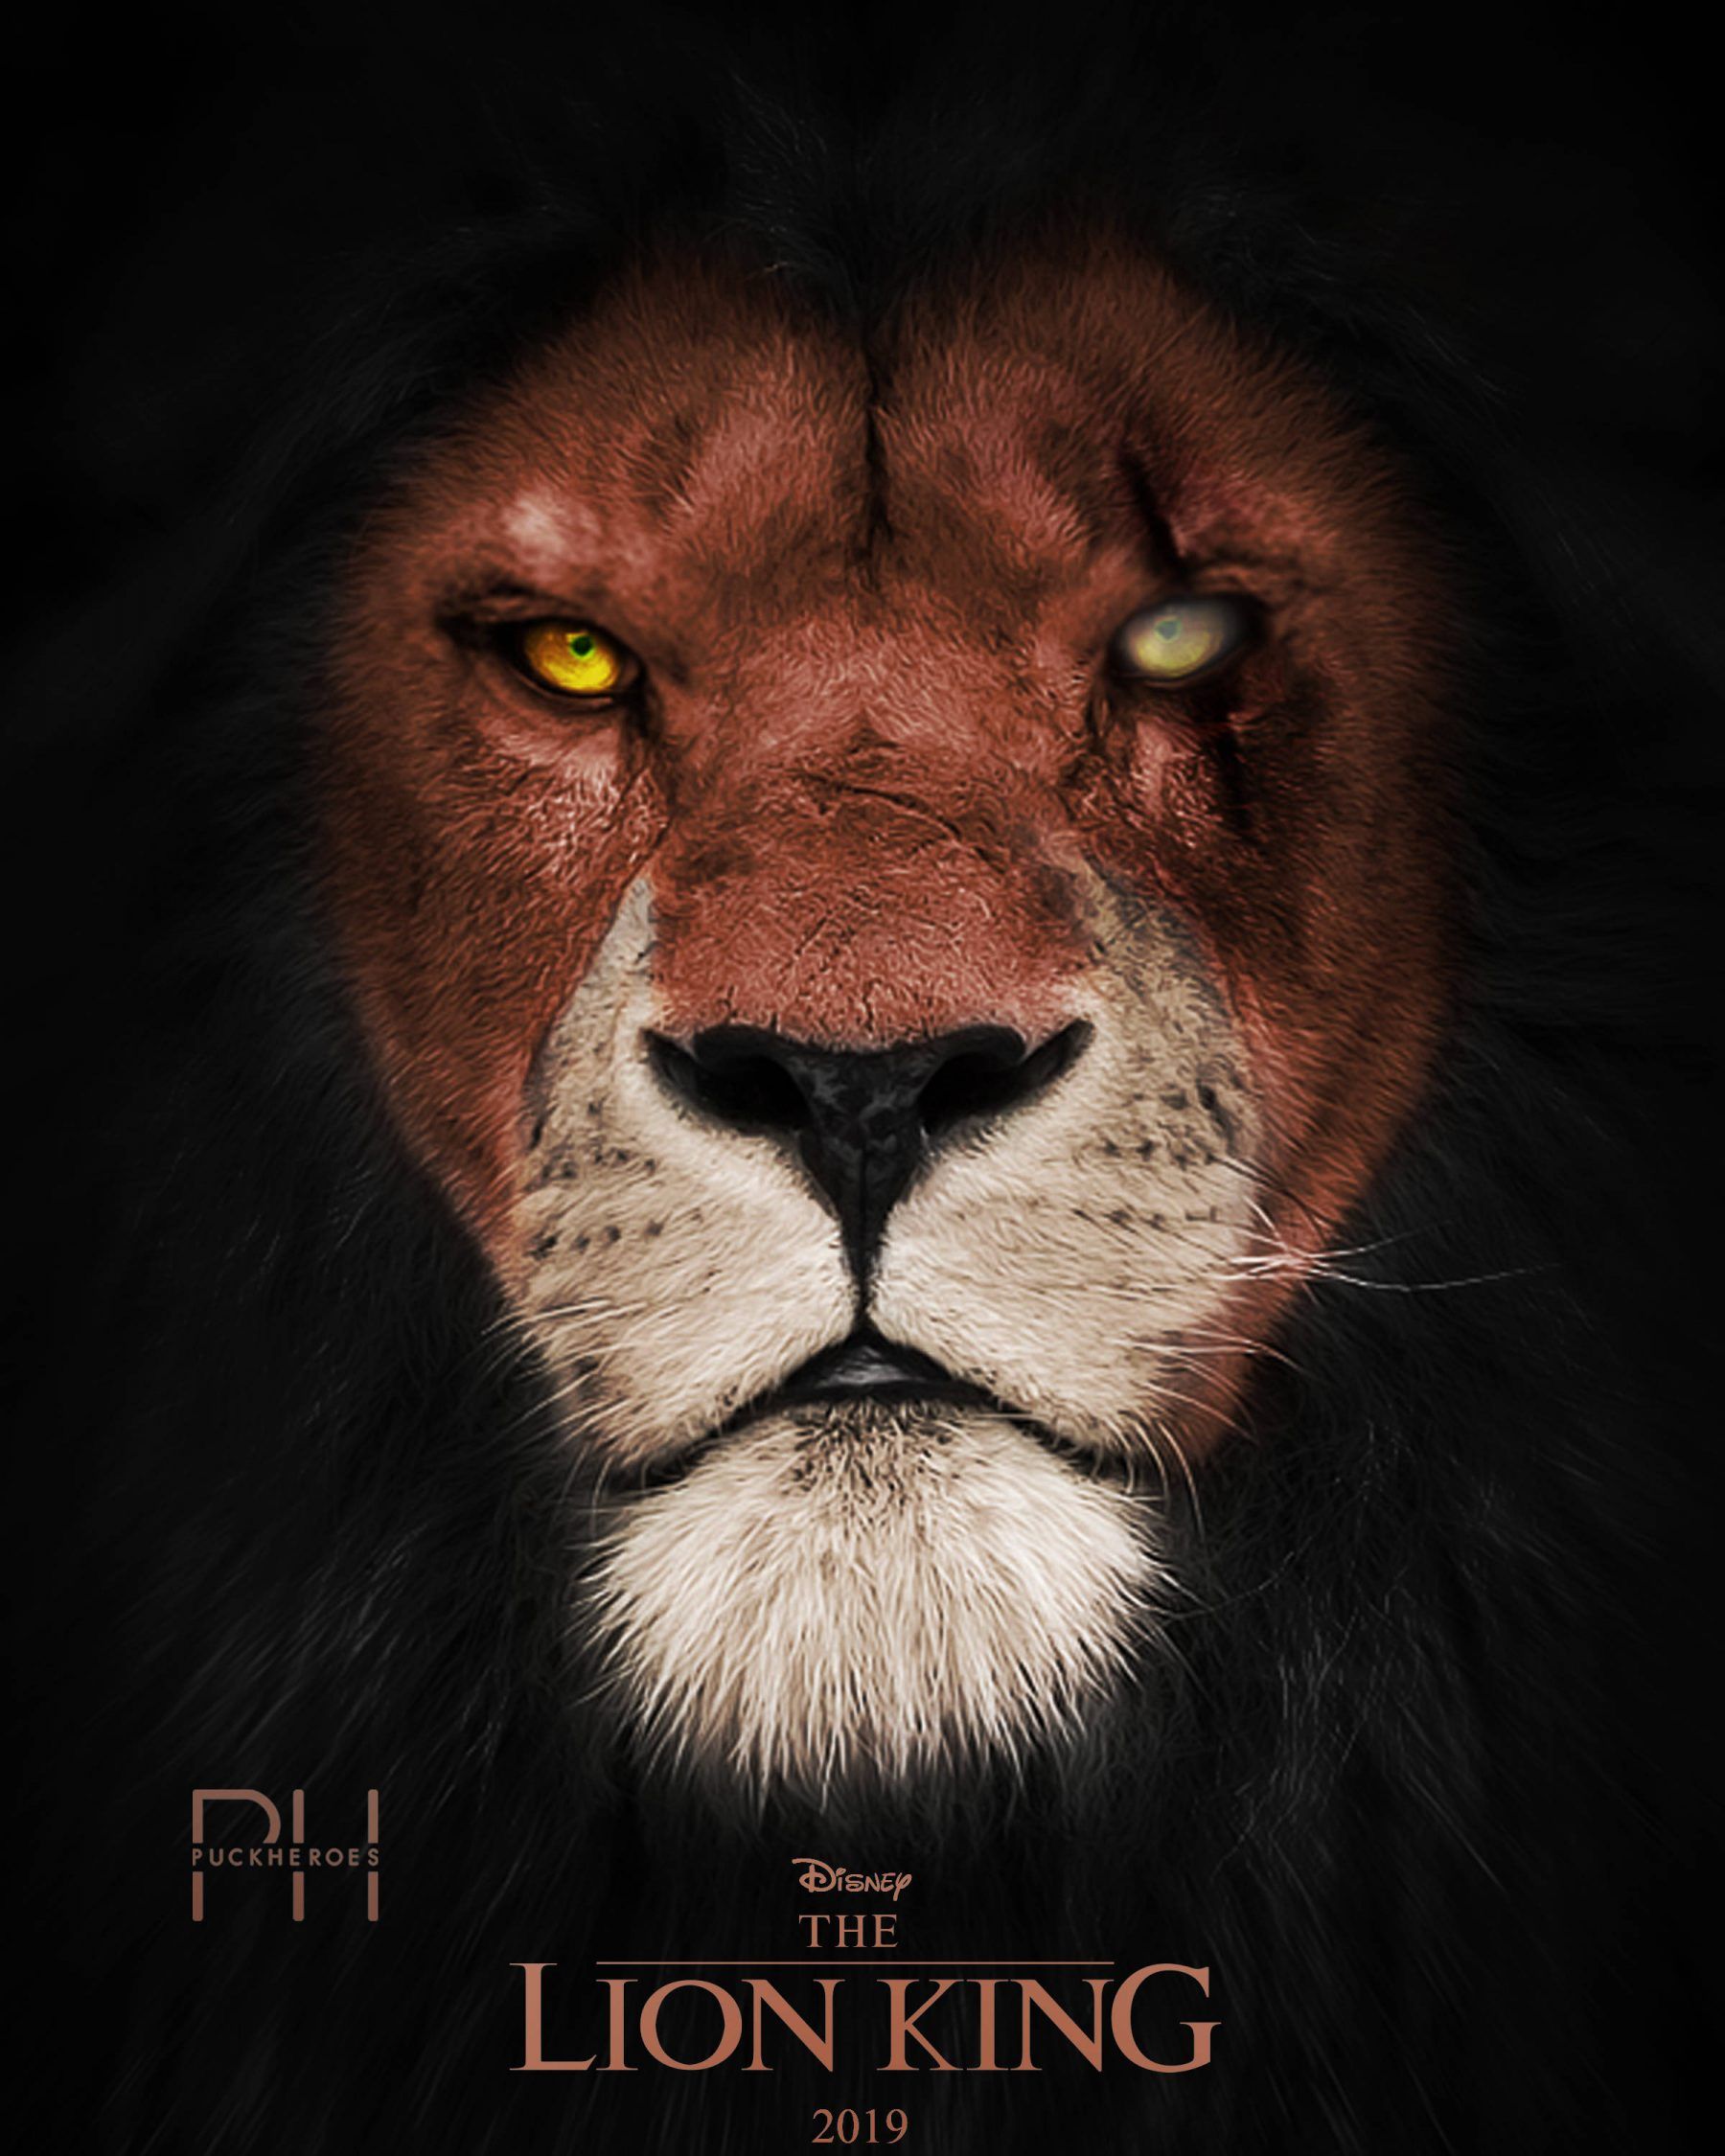 Scar Lion King 2019 - HD Wallpaper 